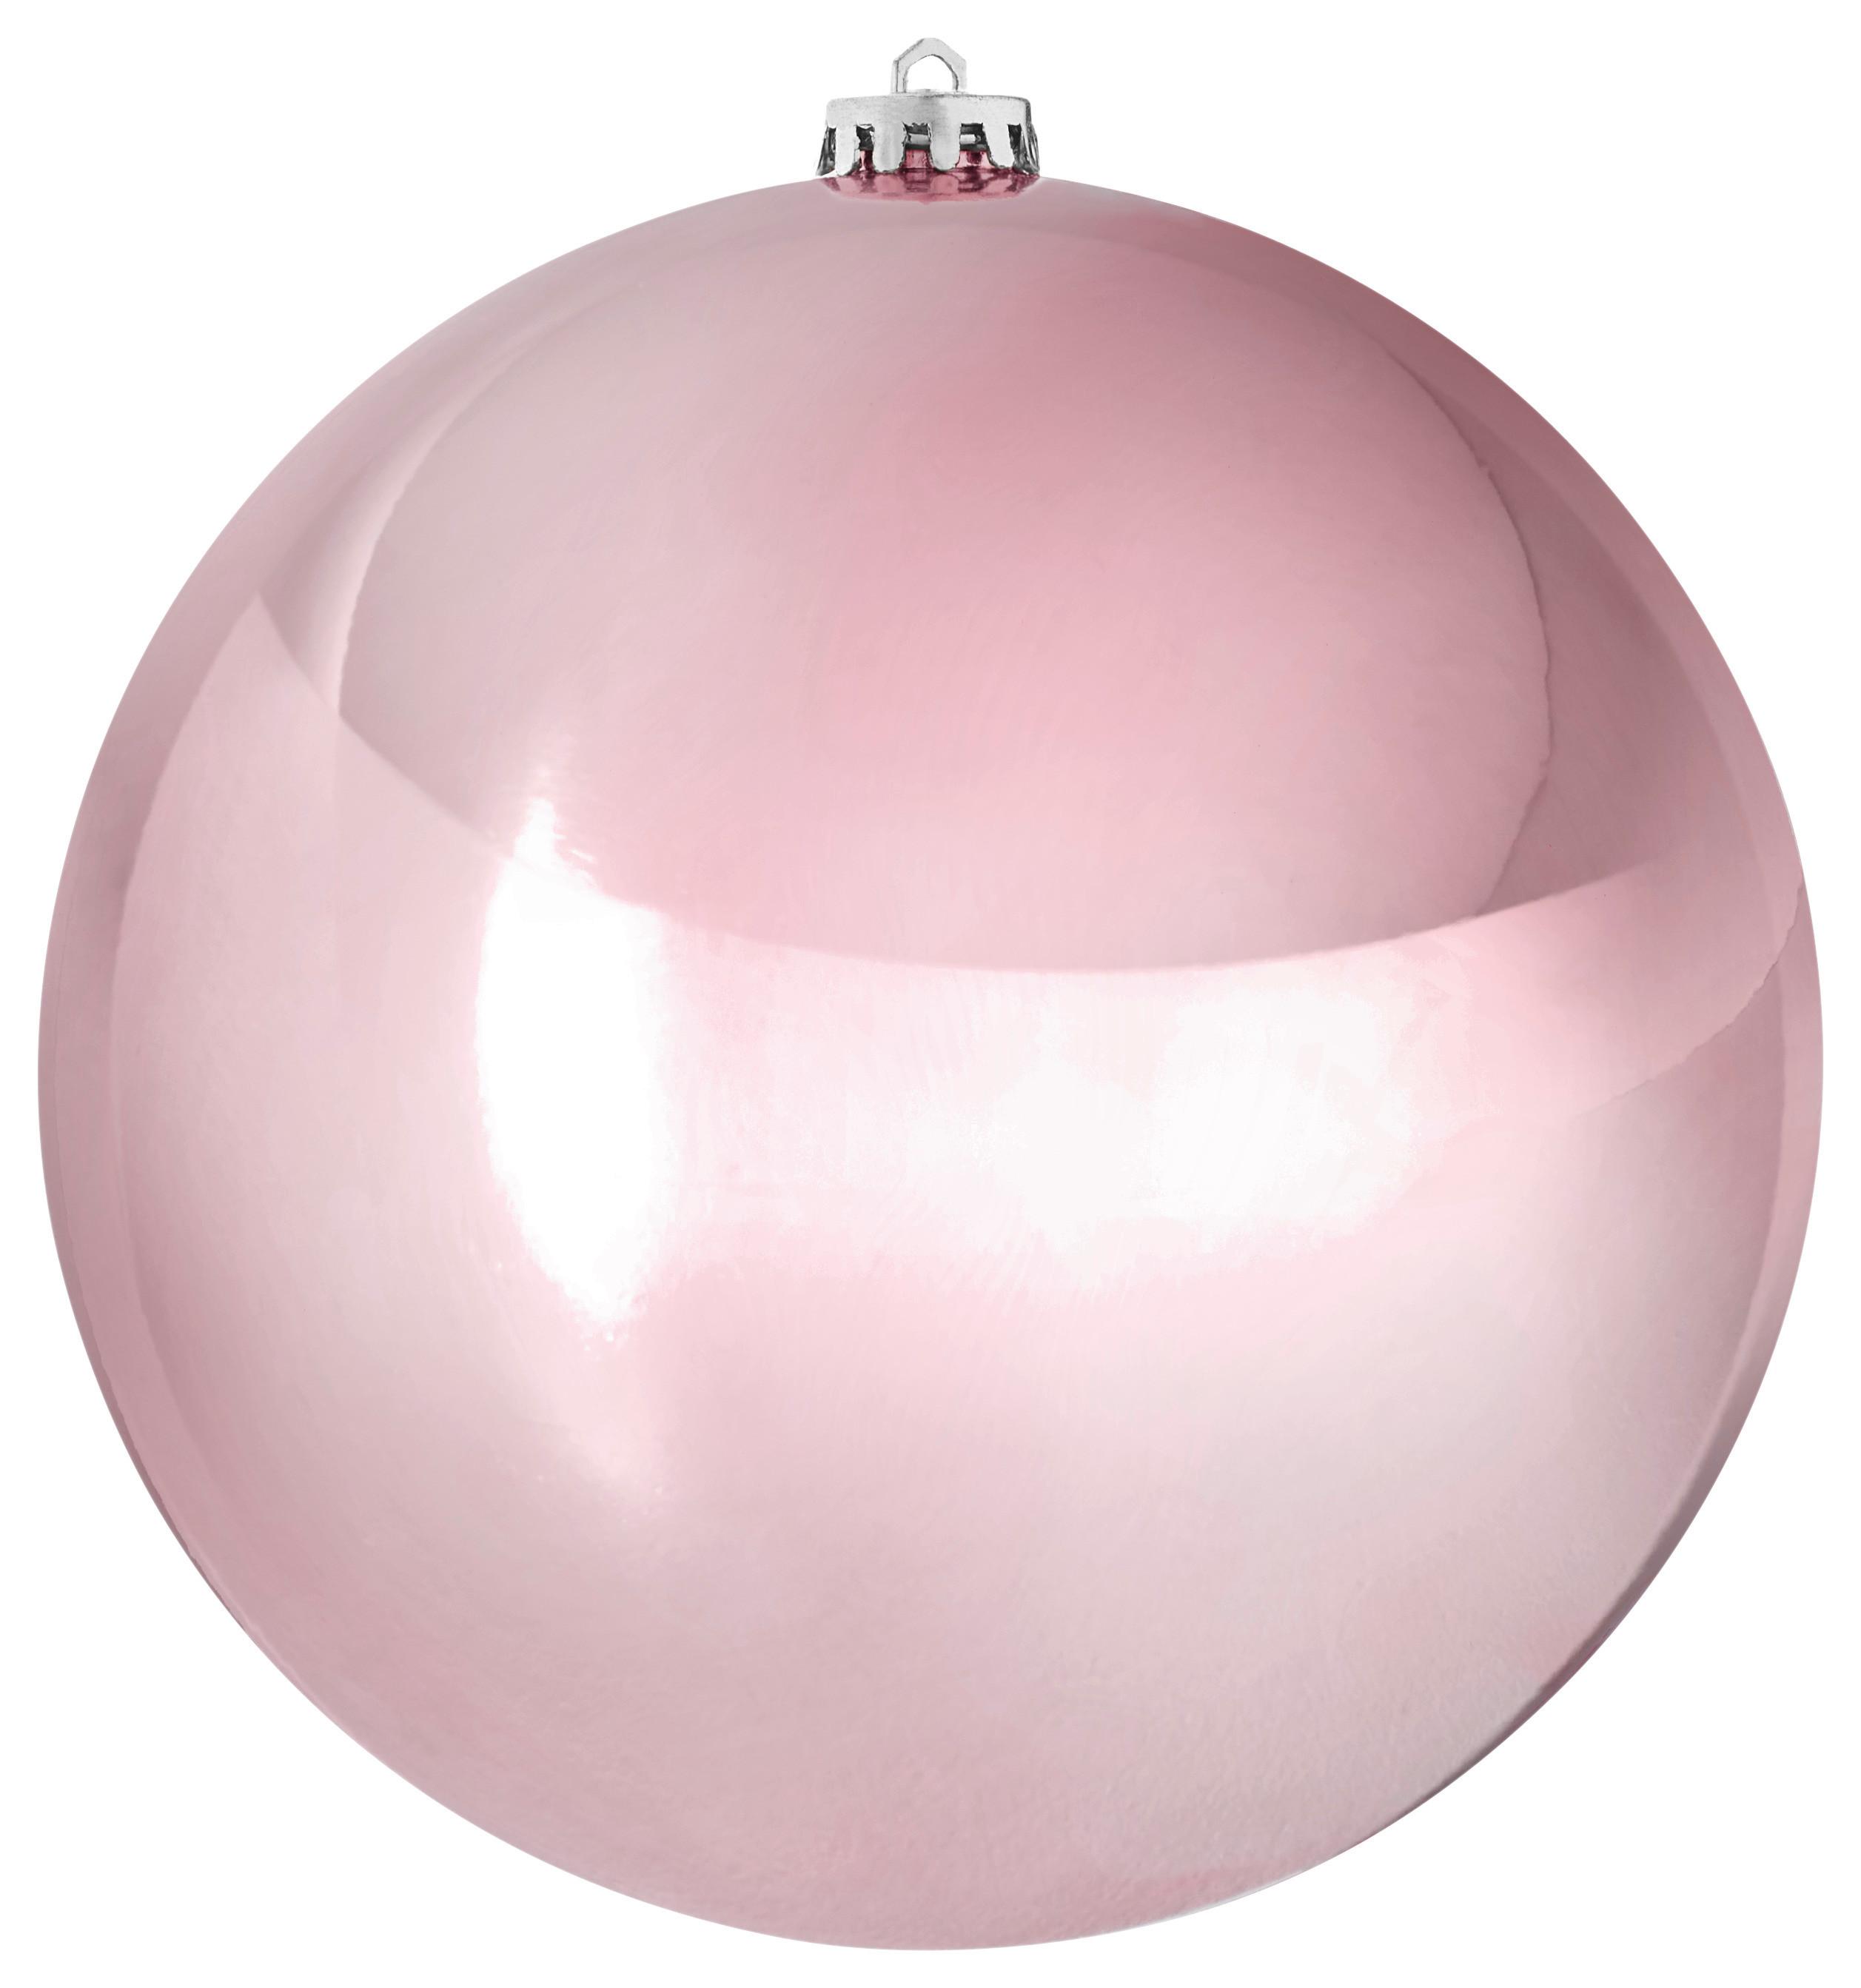 Vianočná Guľa Big -Paz- - ružová, plast (20cm) - Modern Living